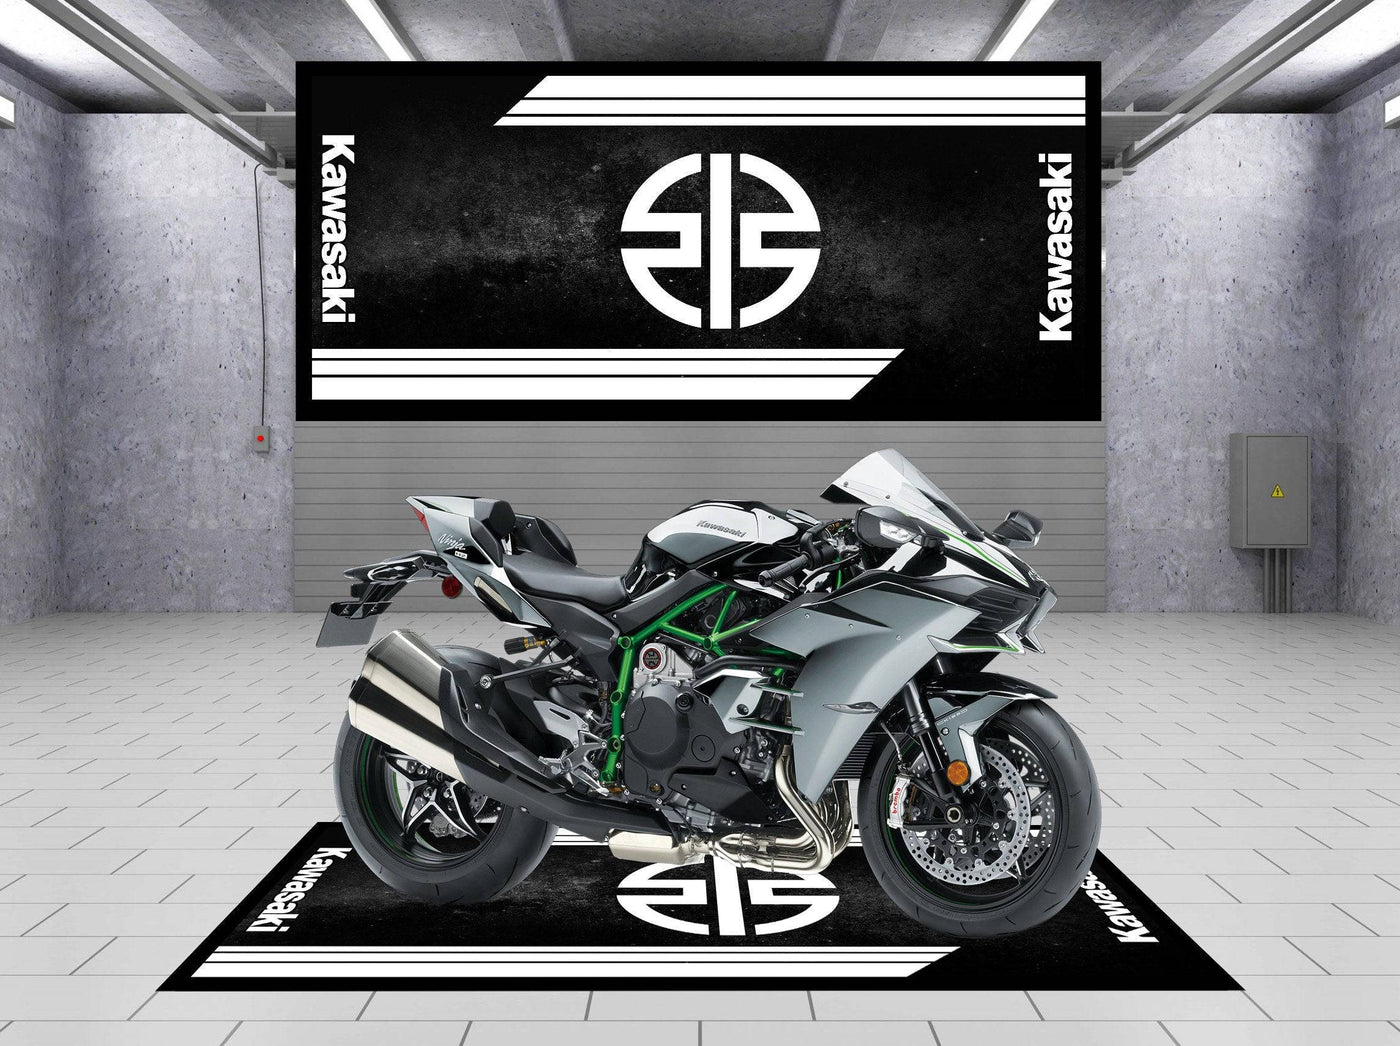 Designed Motorcycle Mat for Kawasaki Universal Black - Motorcycle Pit Mat